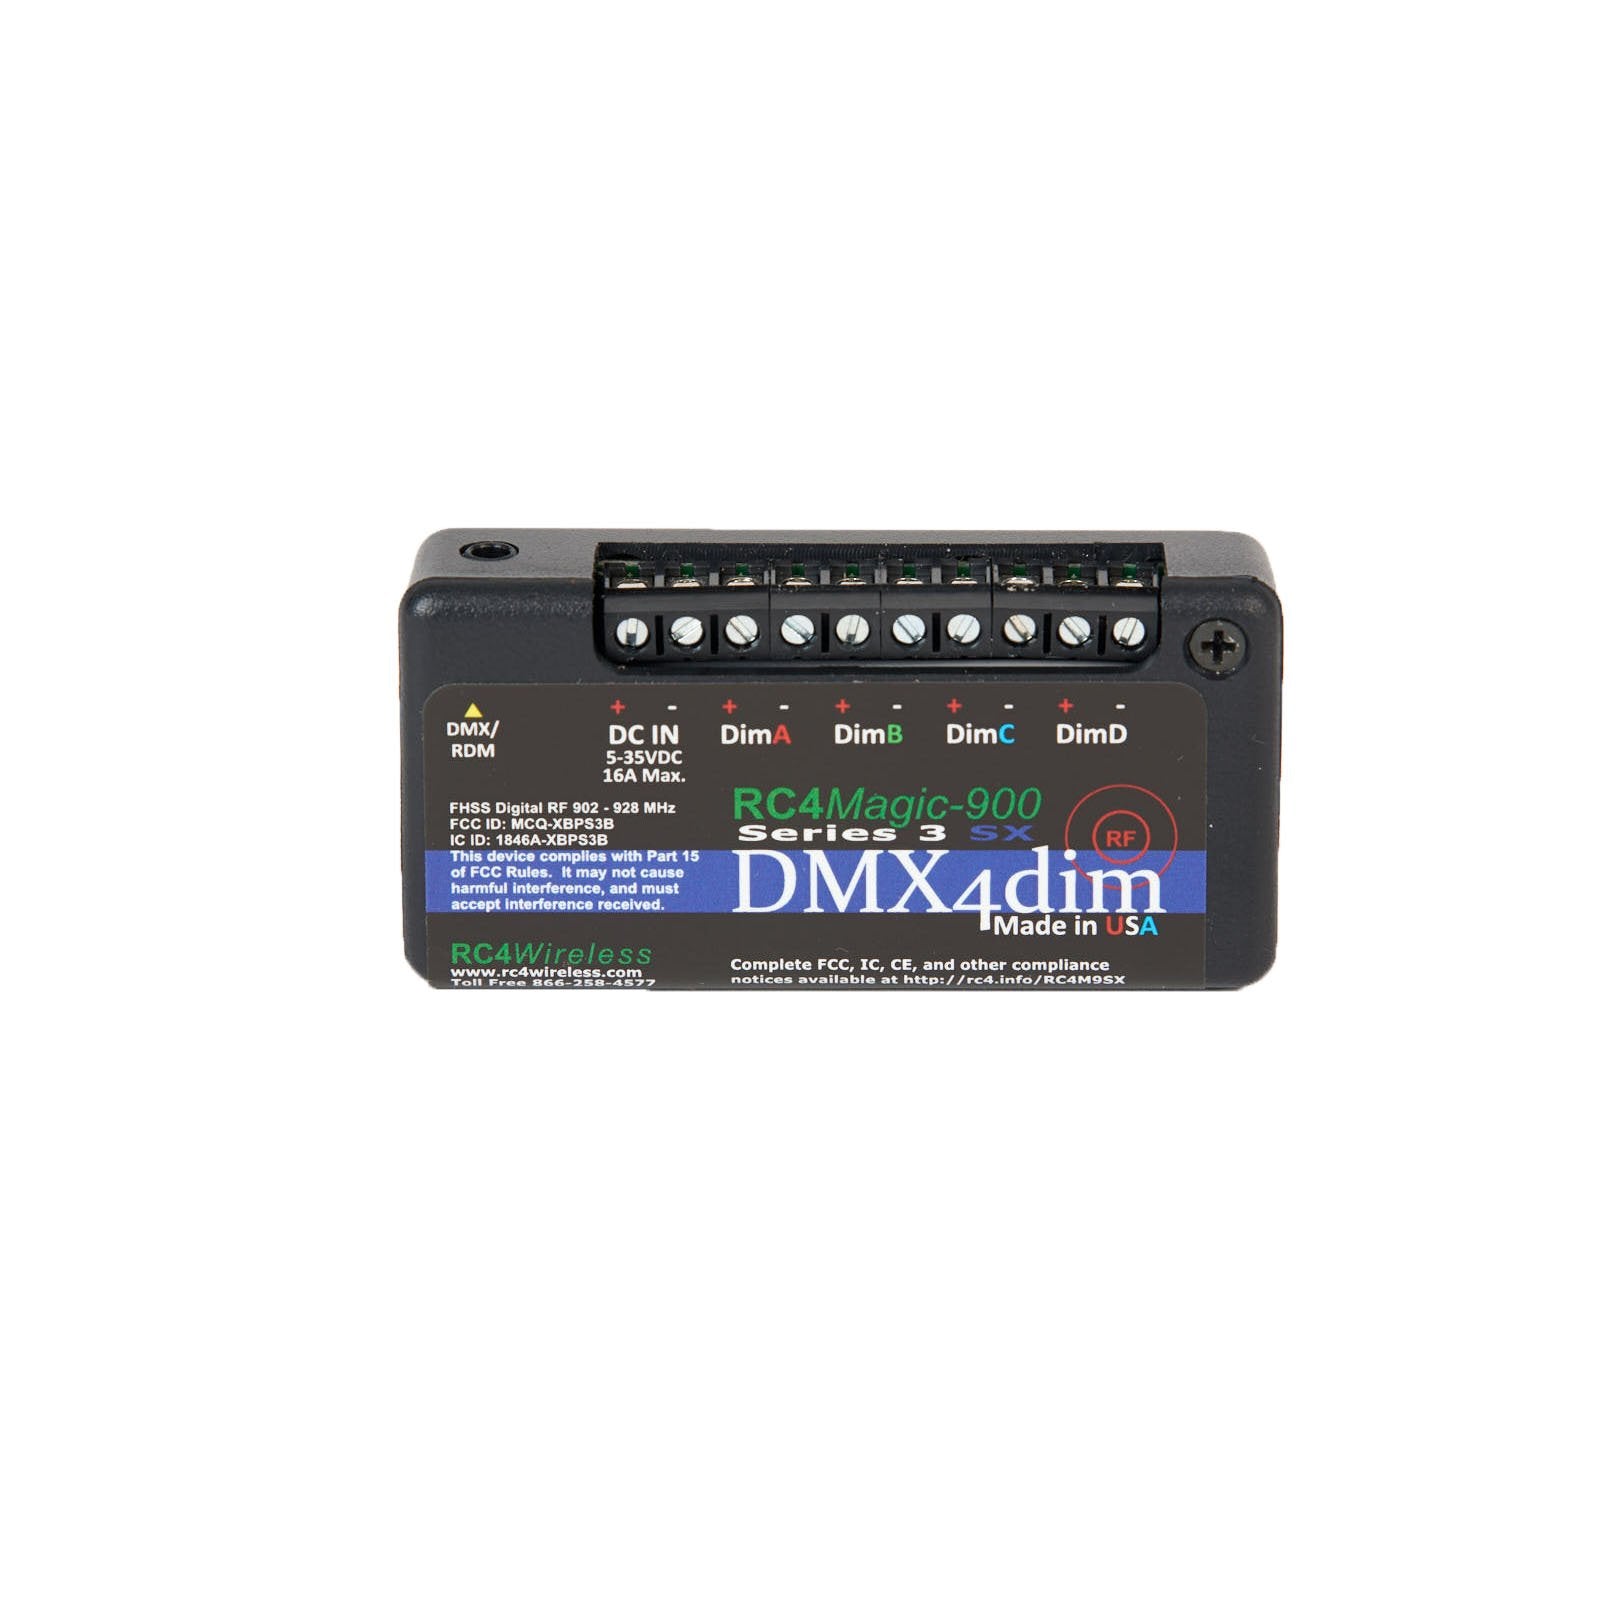 RC4M-900SX DMX4dim 4-Channel Wireless Dimmer